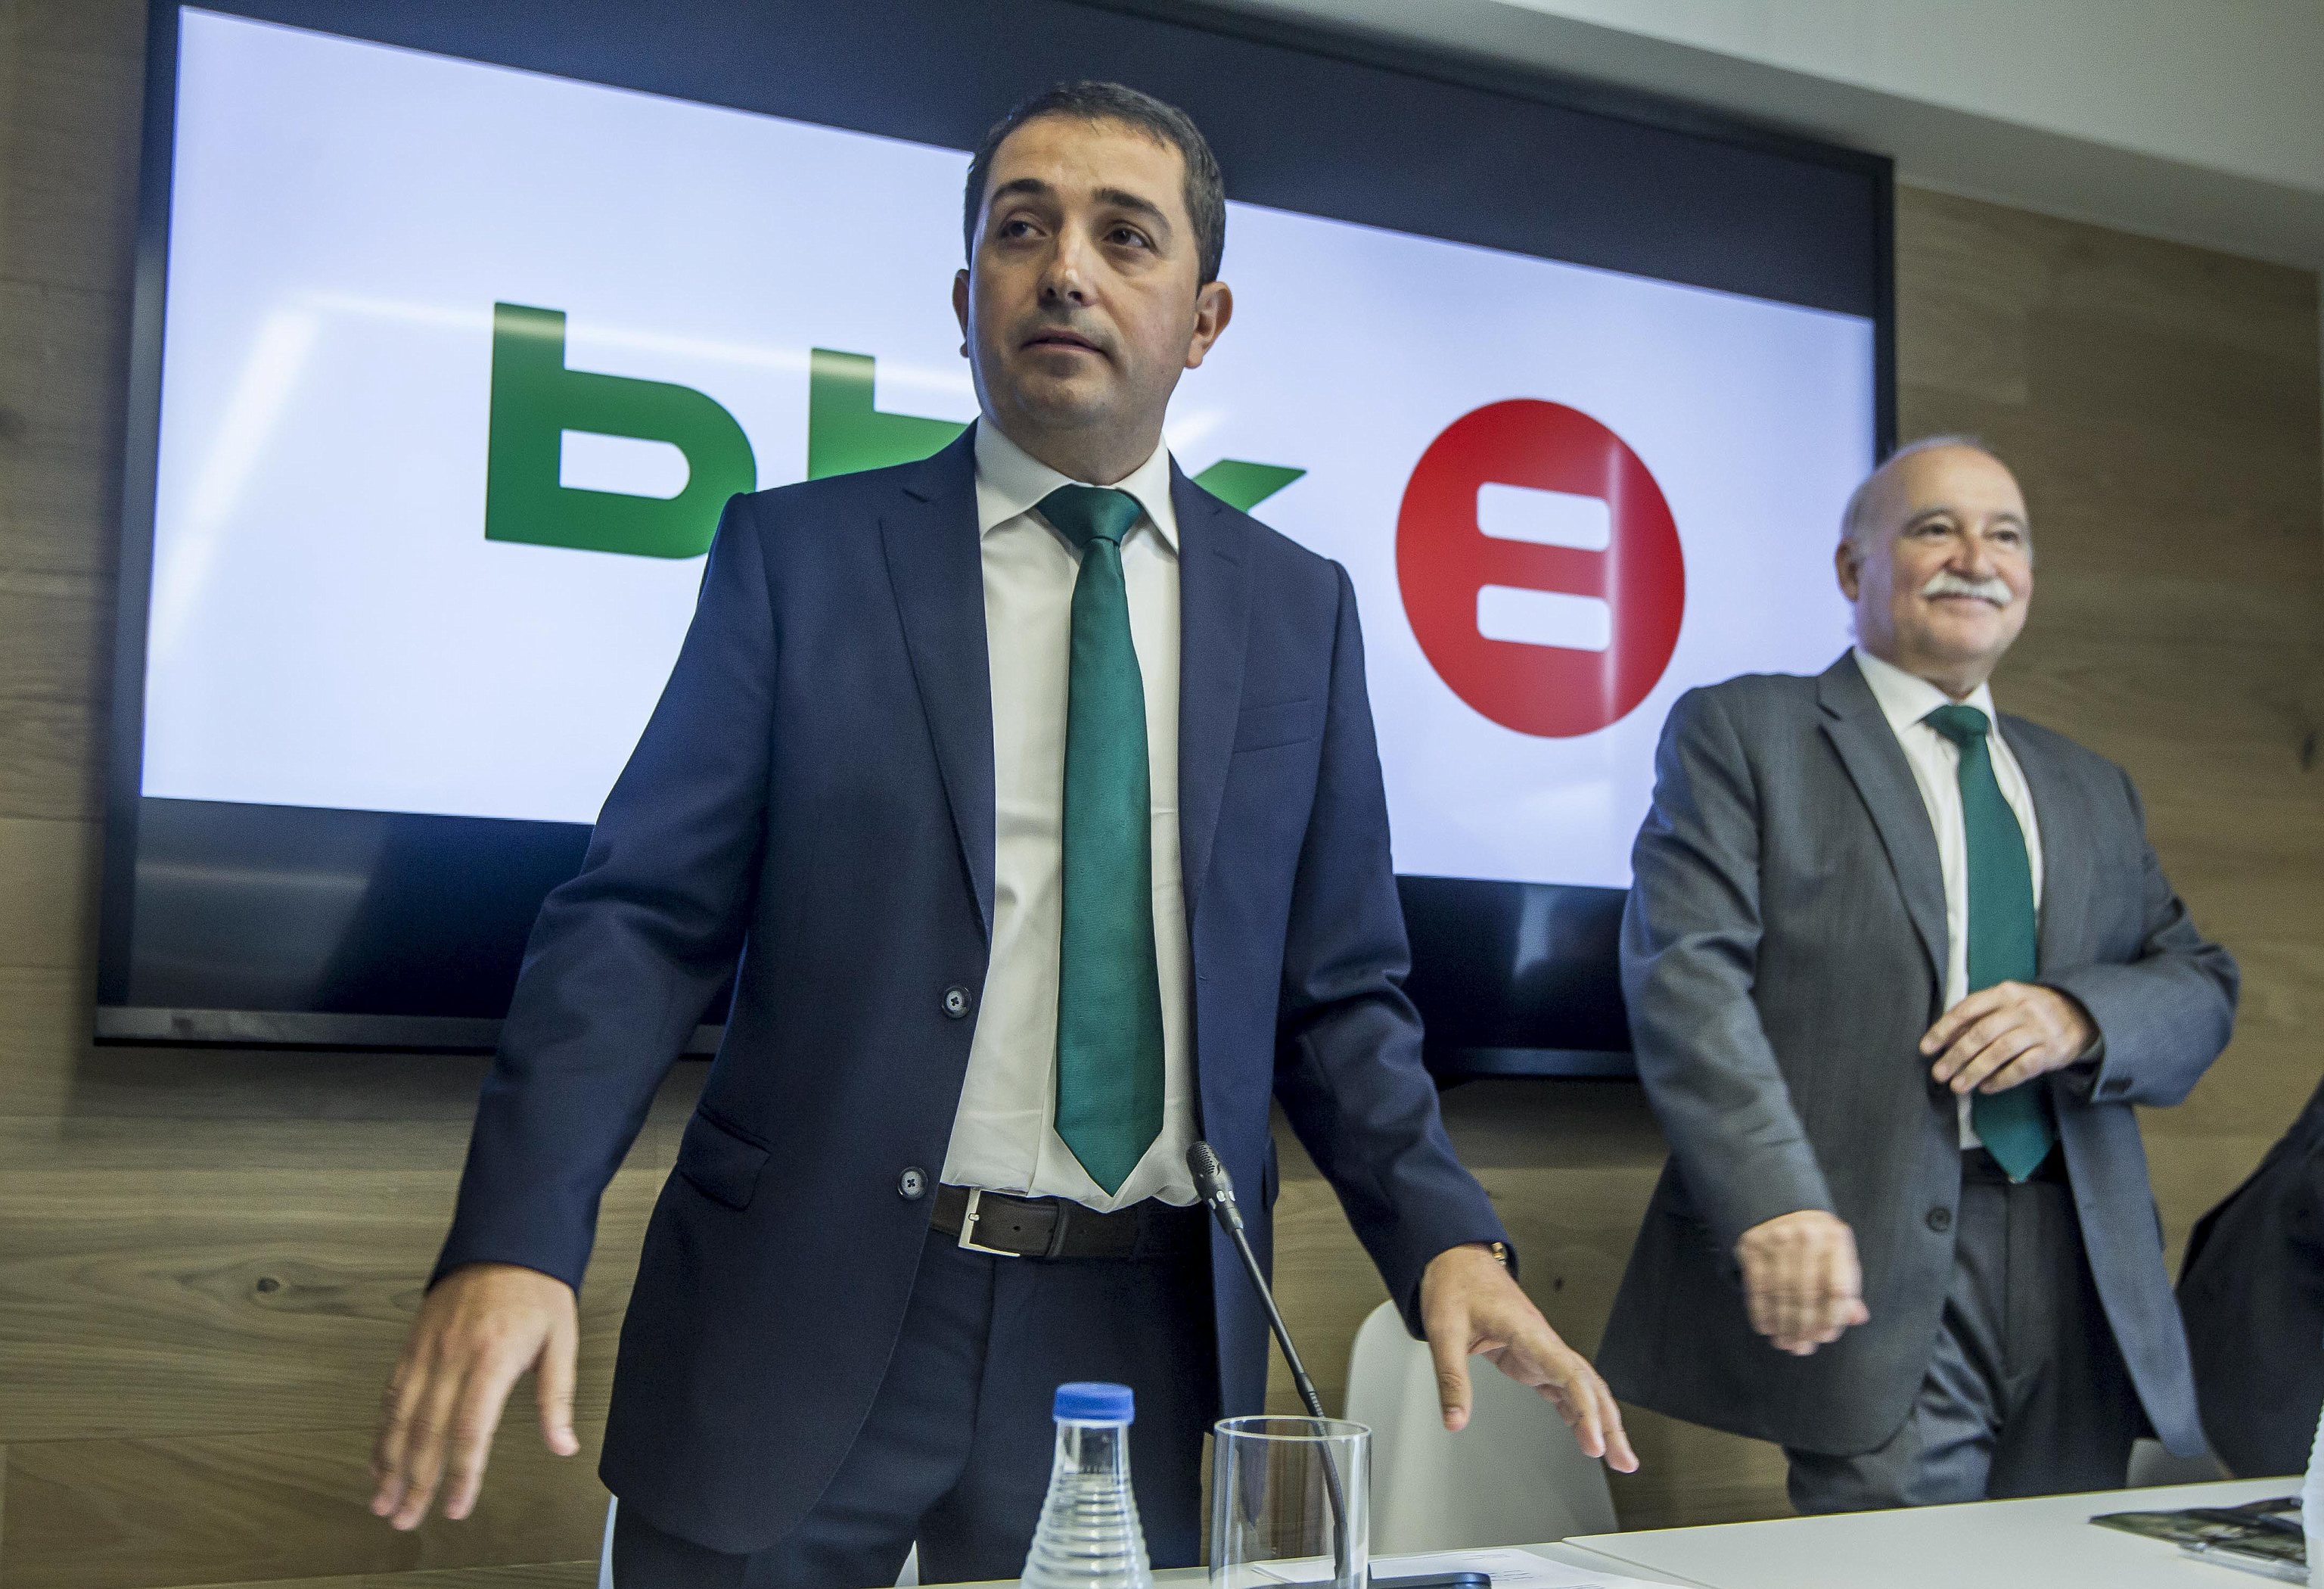 El presidente de la BBK Xabier Sagredo junto al director general Gorka Martnez en una comparecencia pblica.